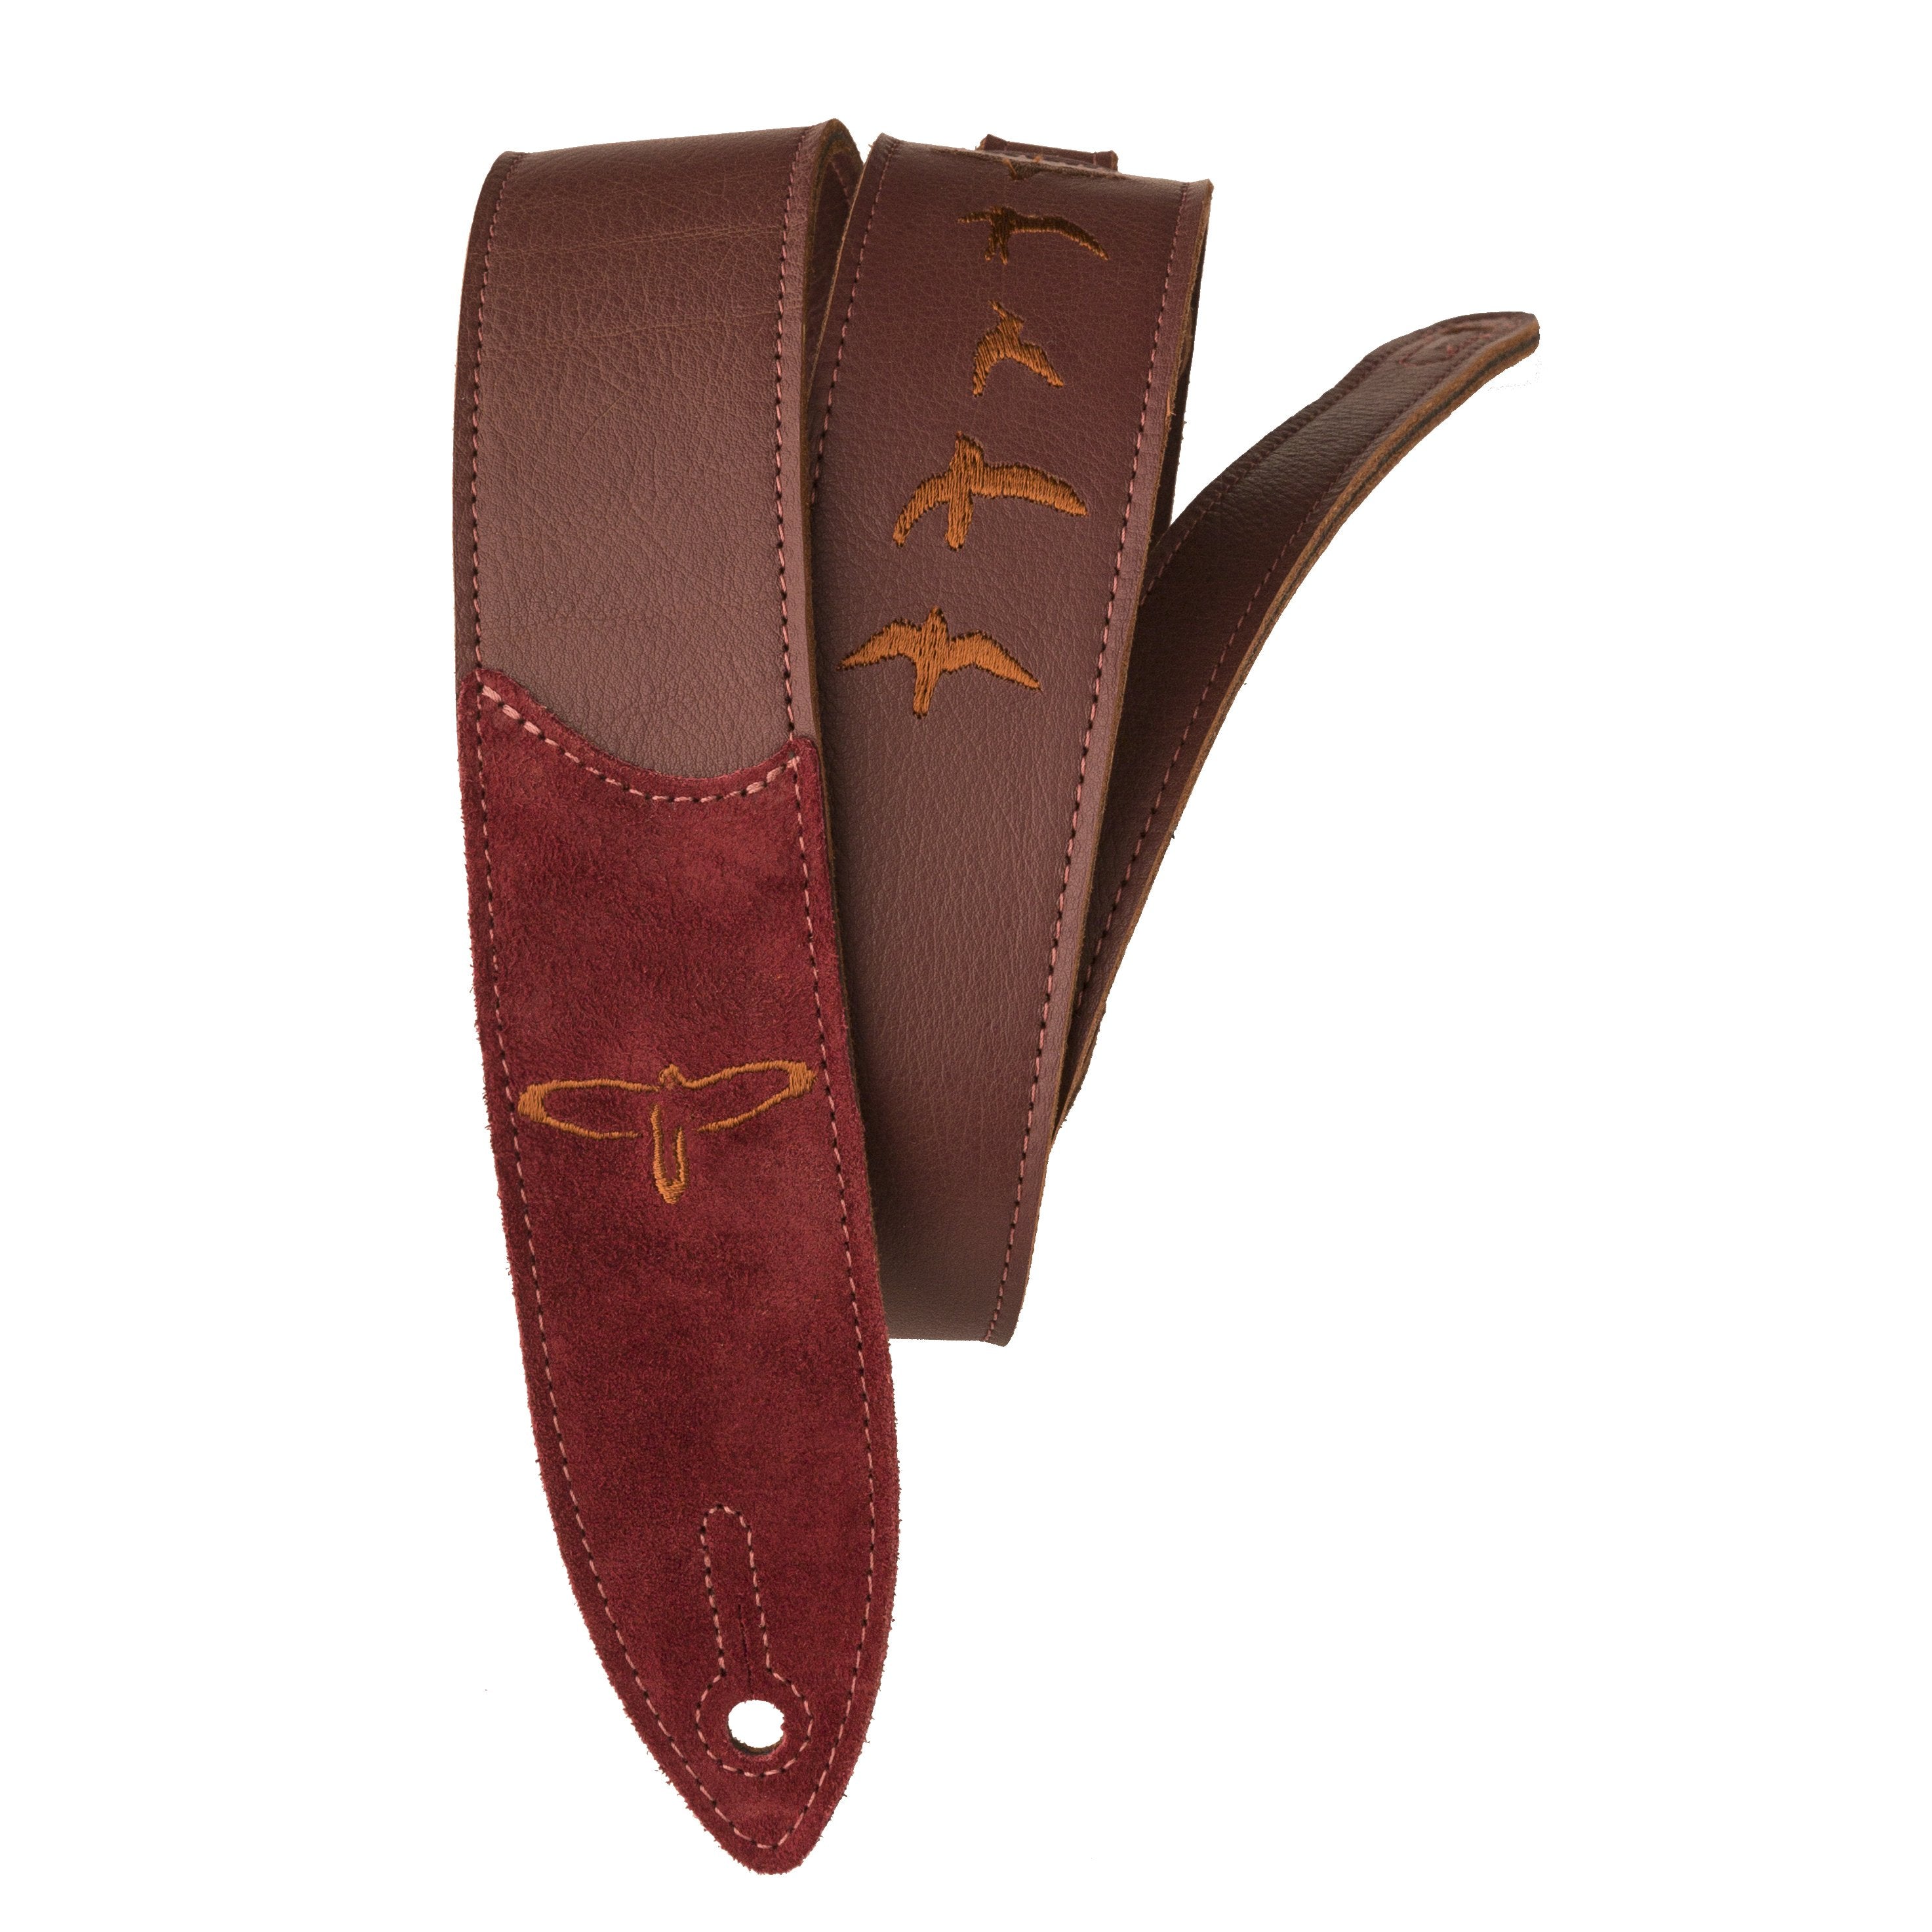 PRS Premium Leather Strap Birds Emroidery Burgundy ACC-3167 - HIENDGUITAR   PRS straps